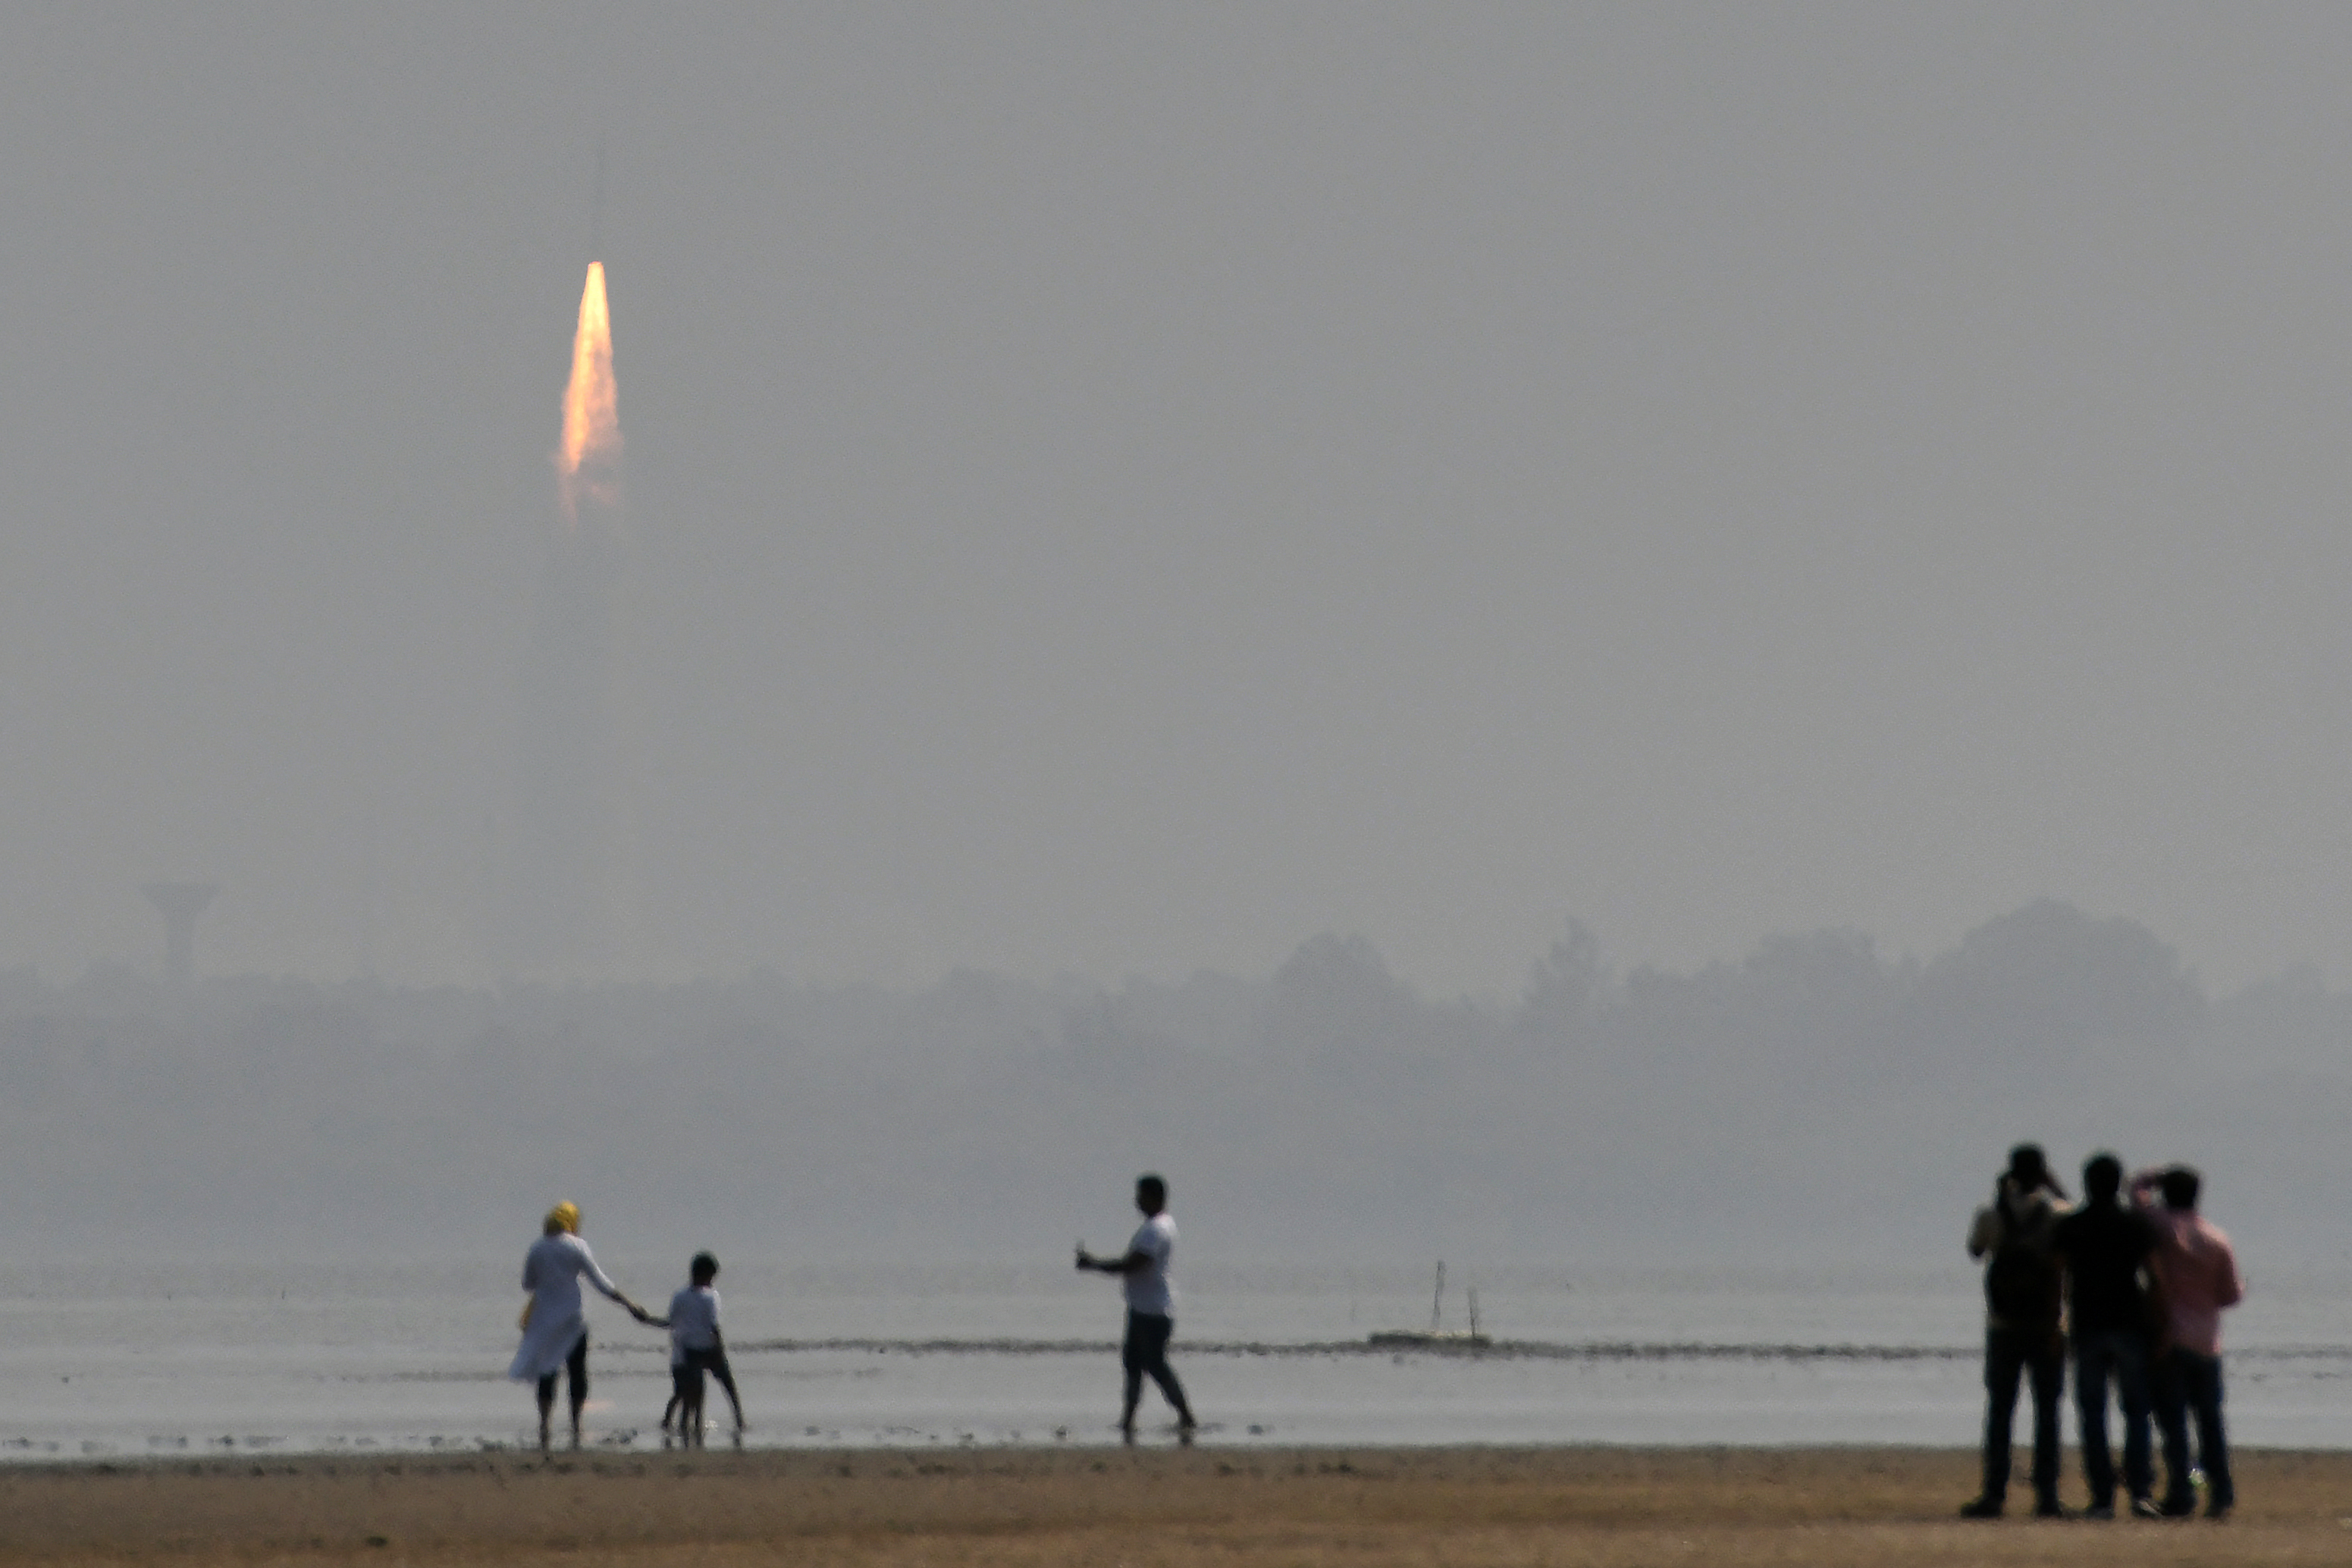 El lanzamiento desde el del Centro Espacial Satish Dhawan de Sriharikota, en India (Arun SANKAR / AFP)